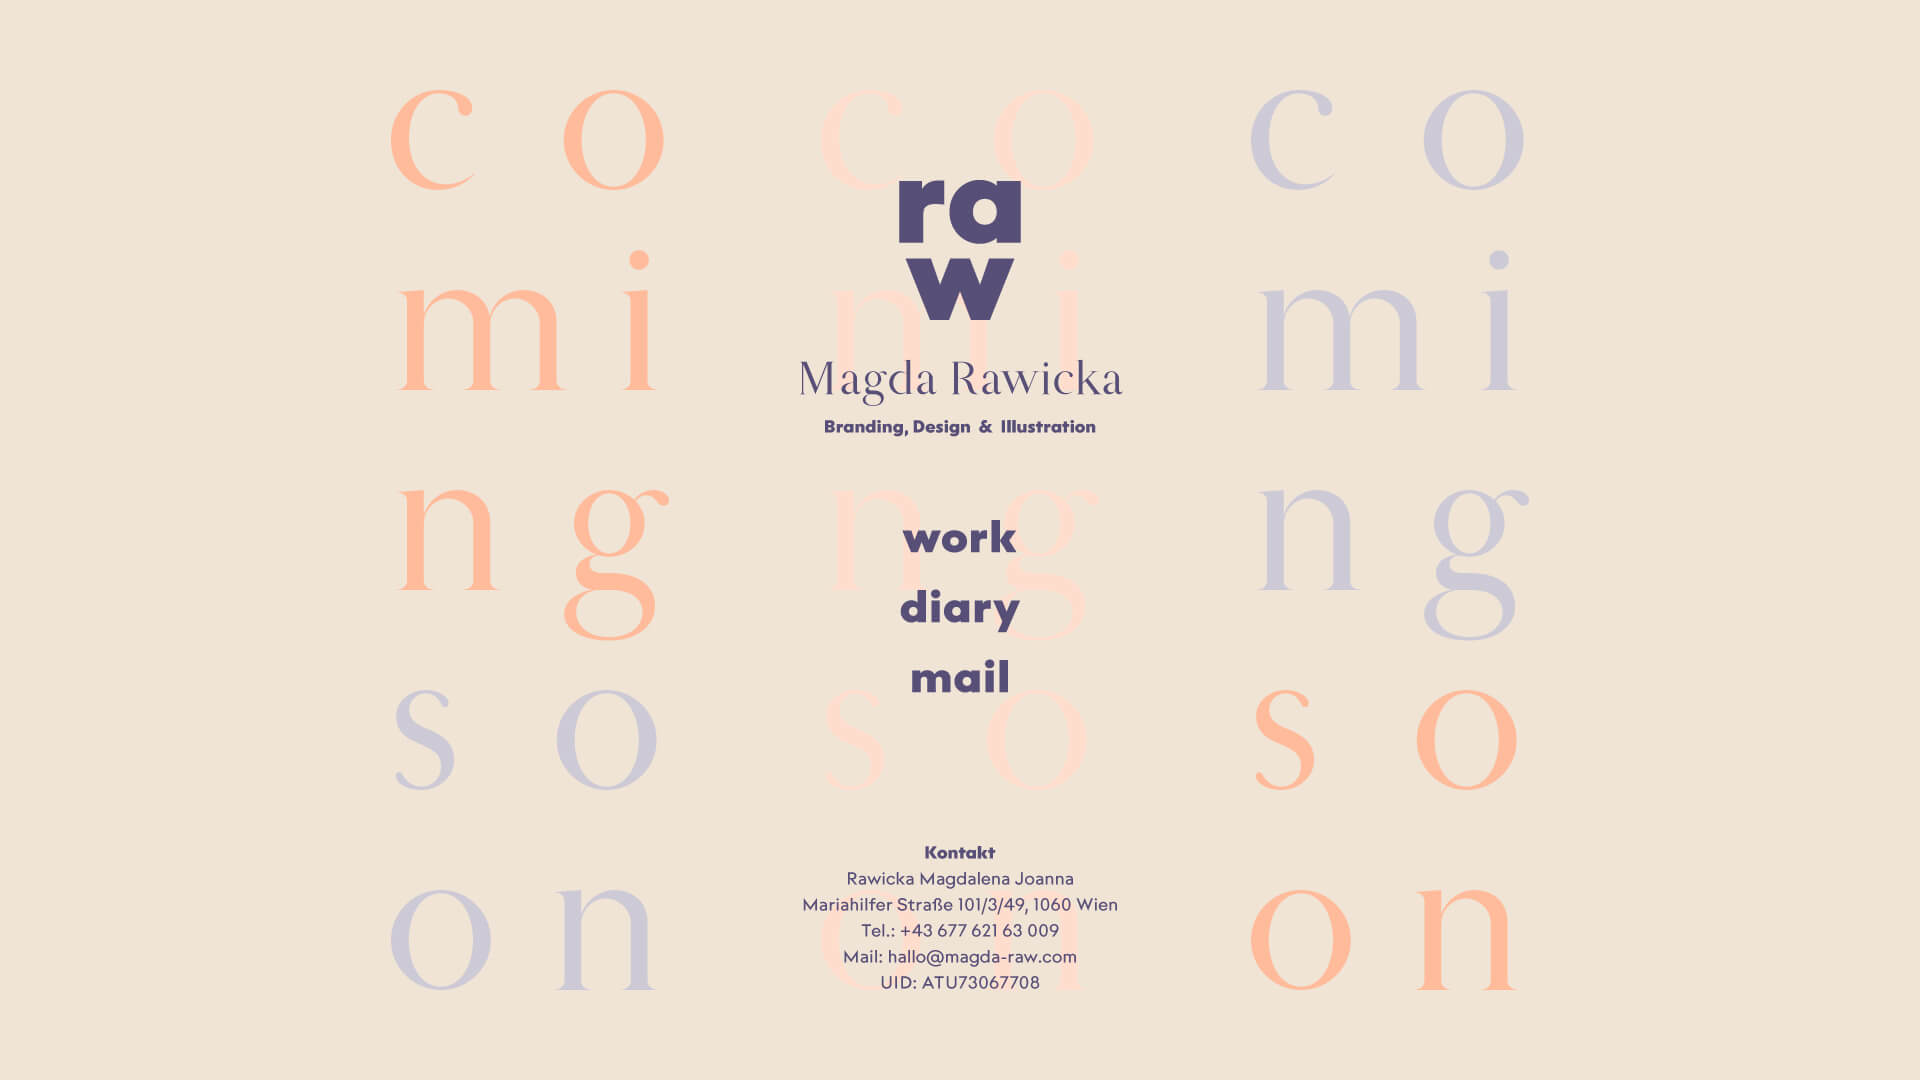 Platzhalter: Magda Rawicka - Branding, Design &Illustration